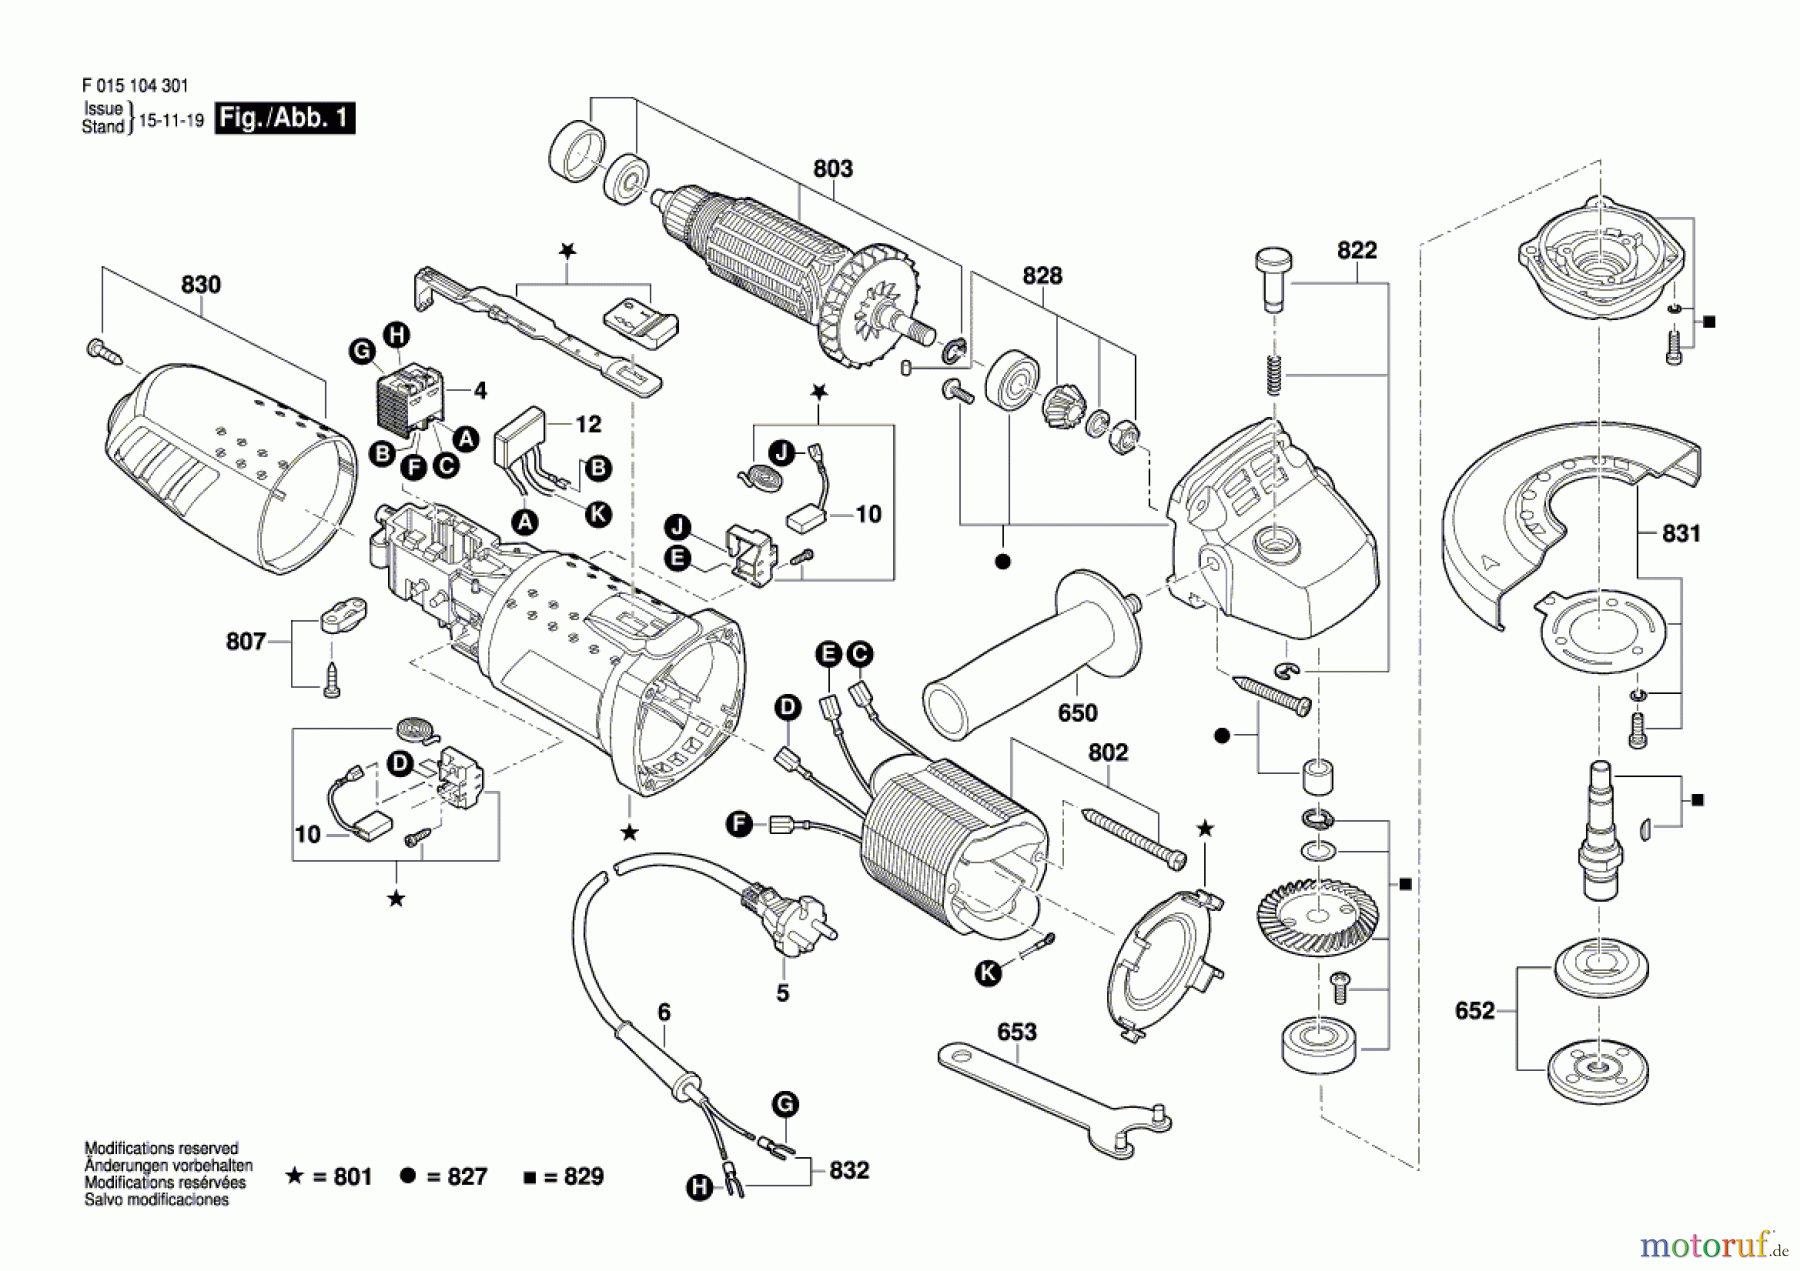  Bosch Werkzeug Pw-Winkelschleifer 1043 Seite 1